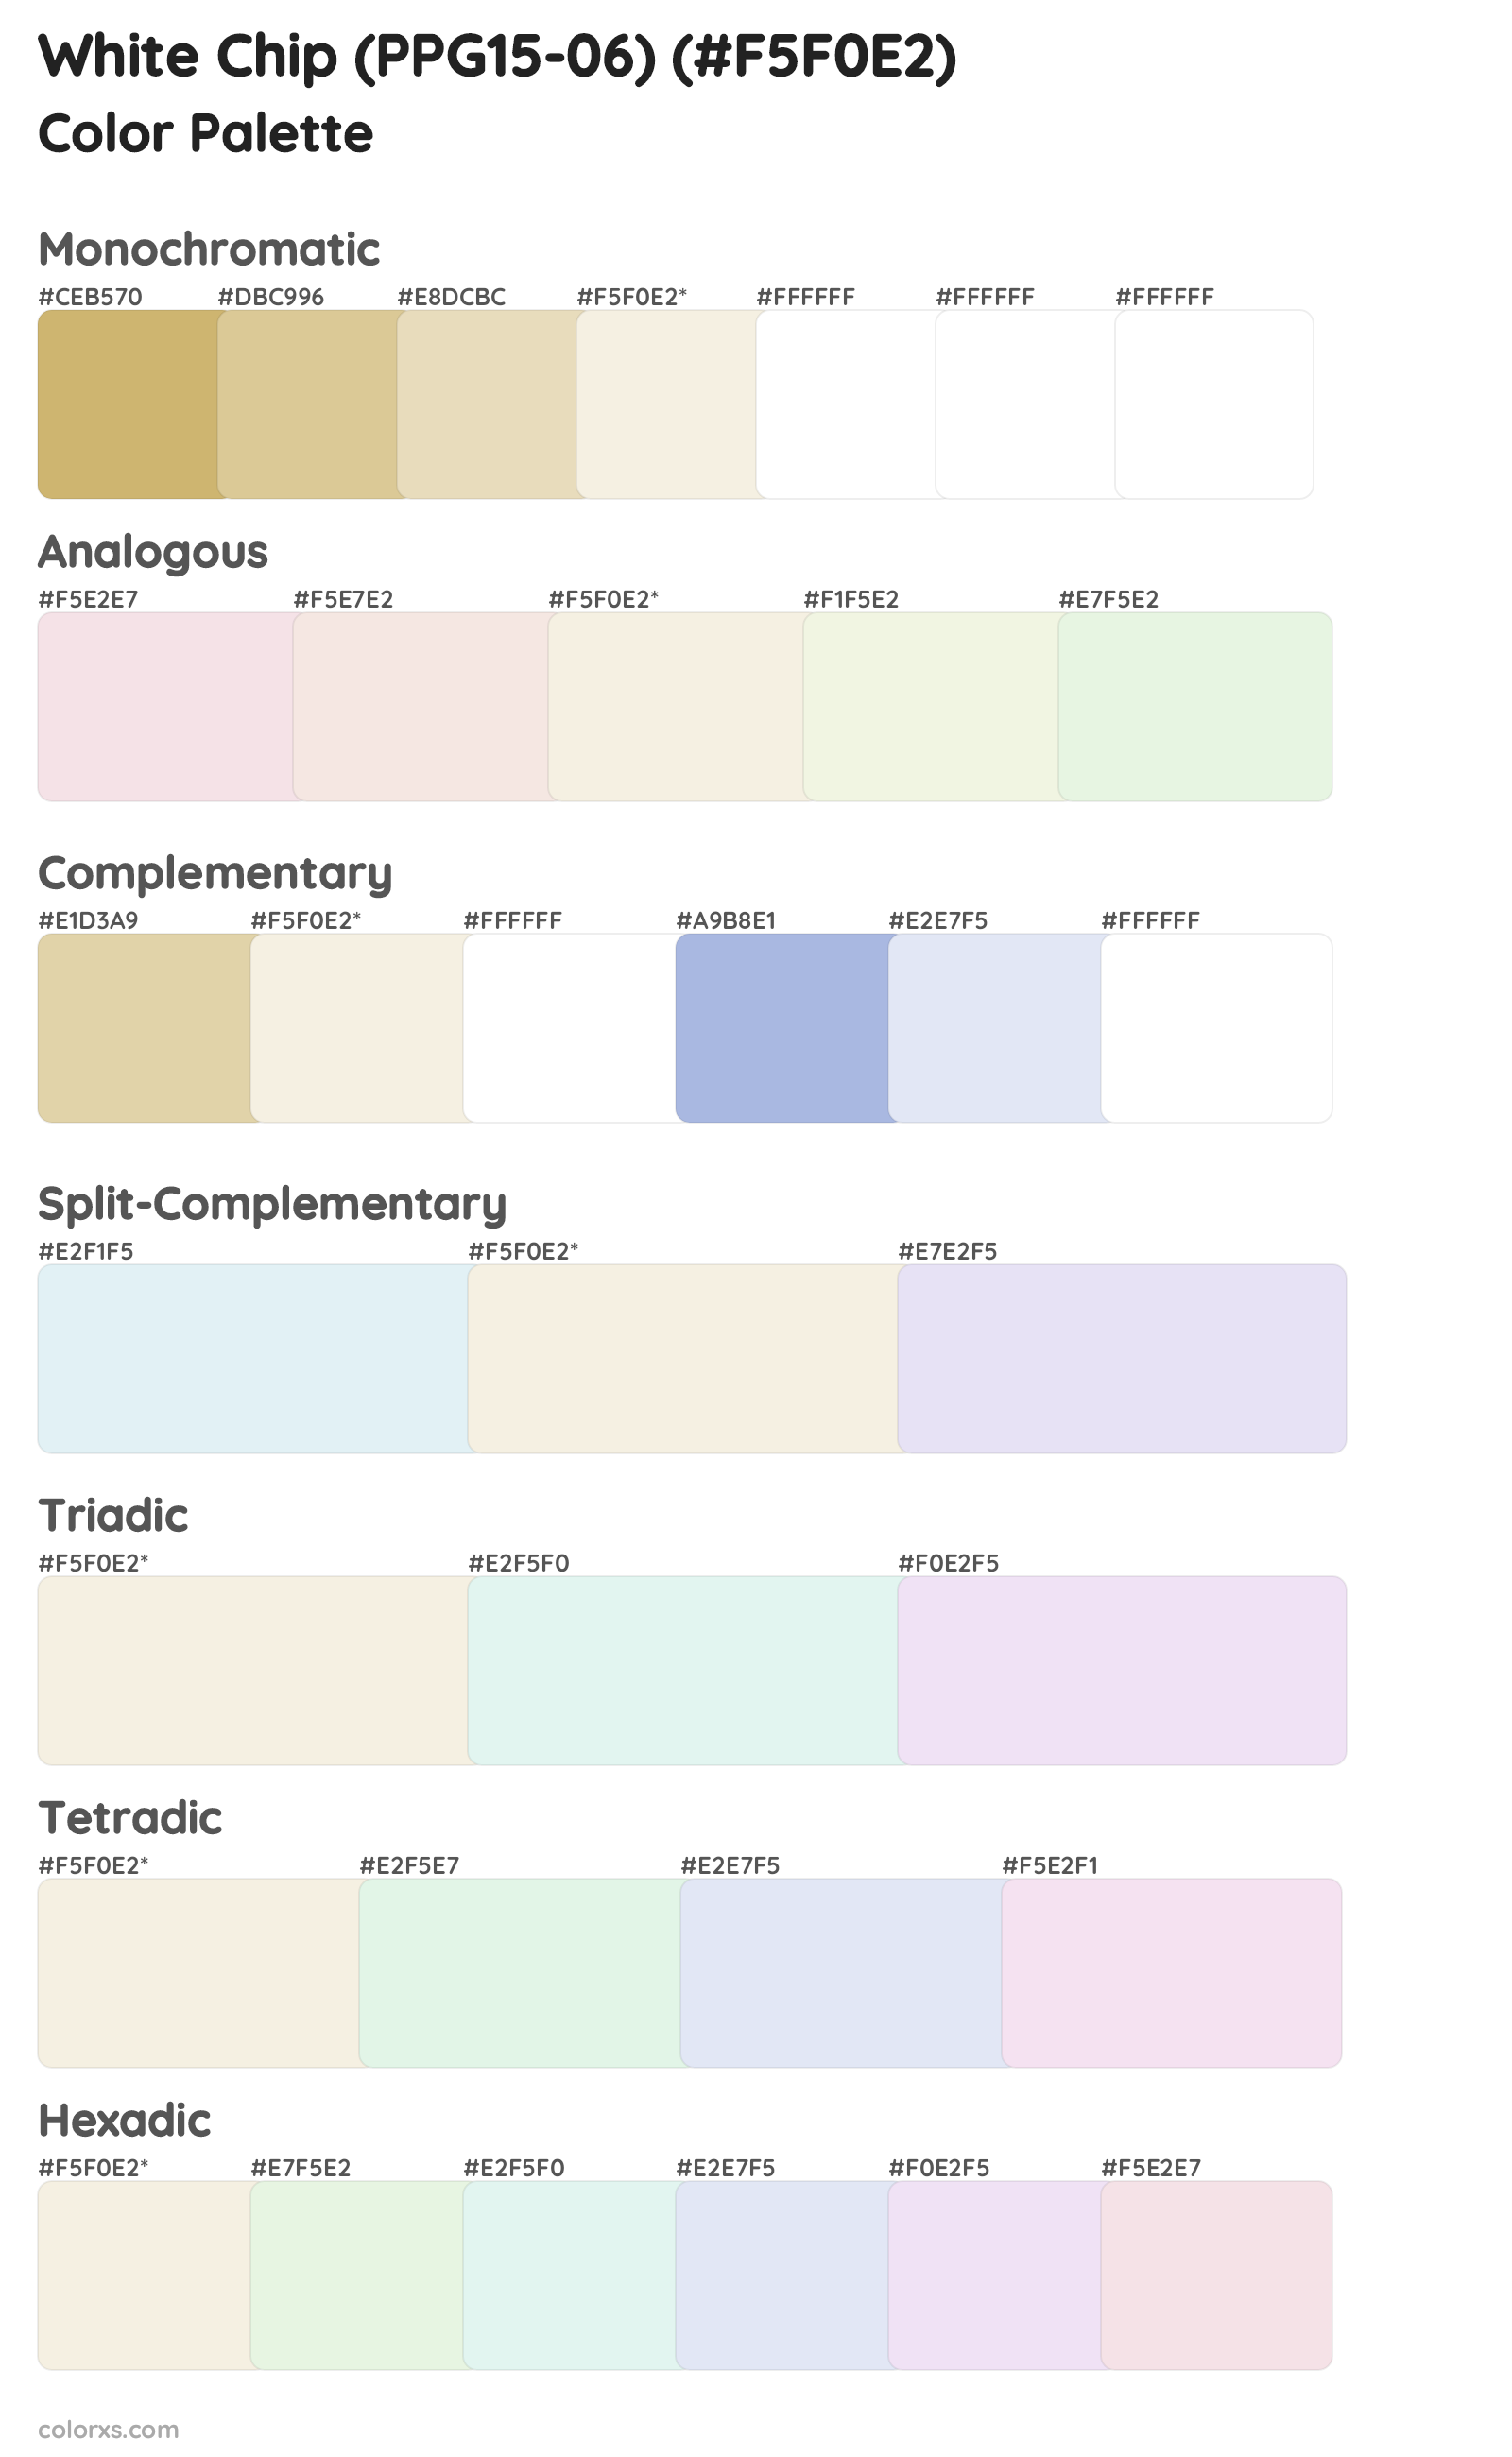 White Chip (PPG15-06) Color Scheme Palettes